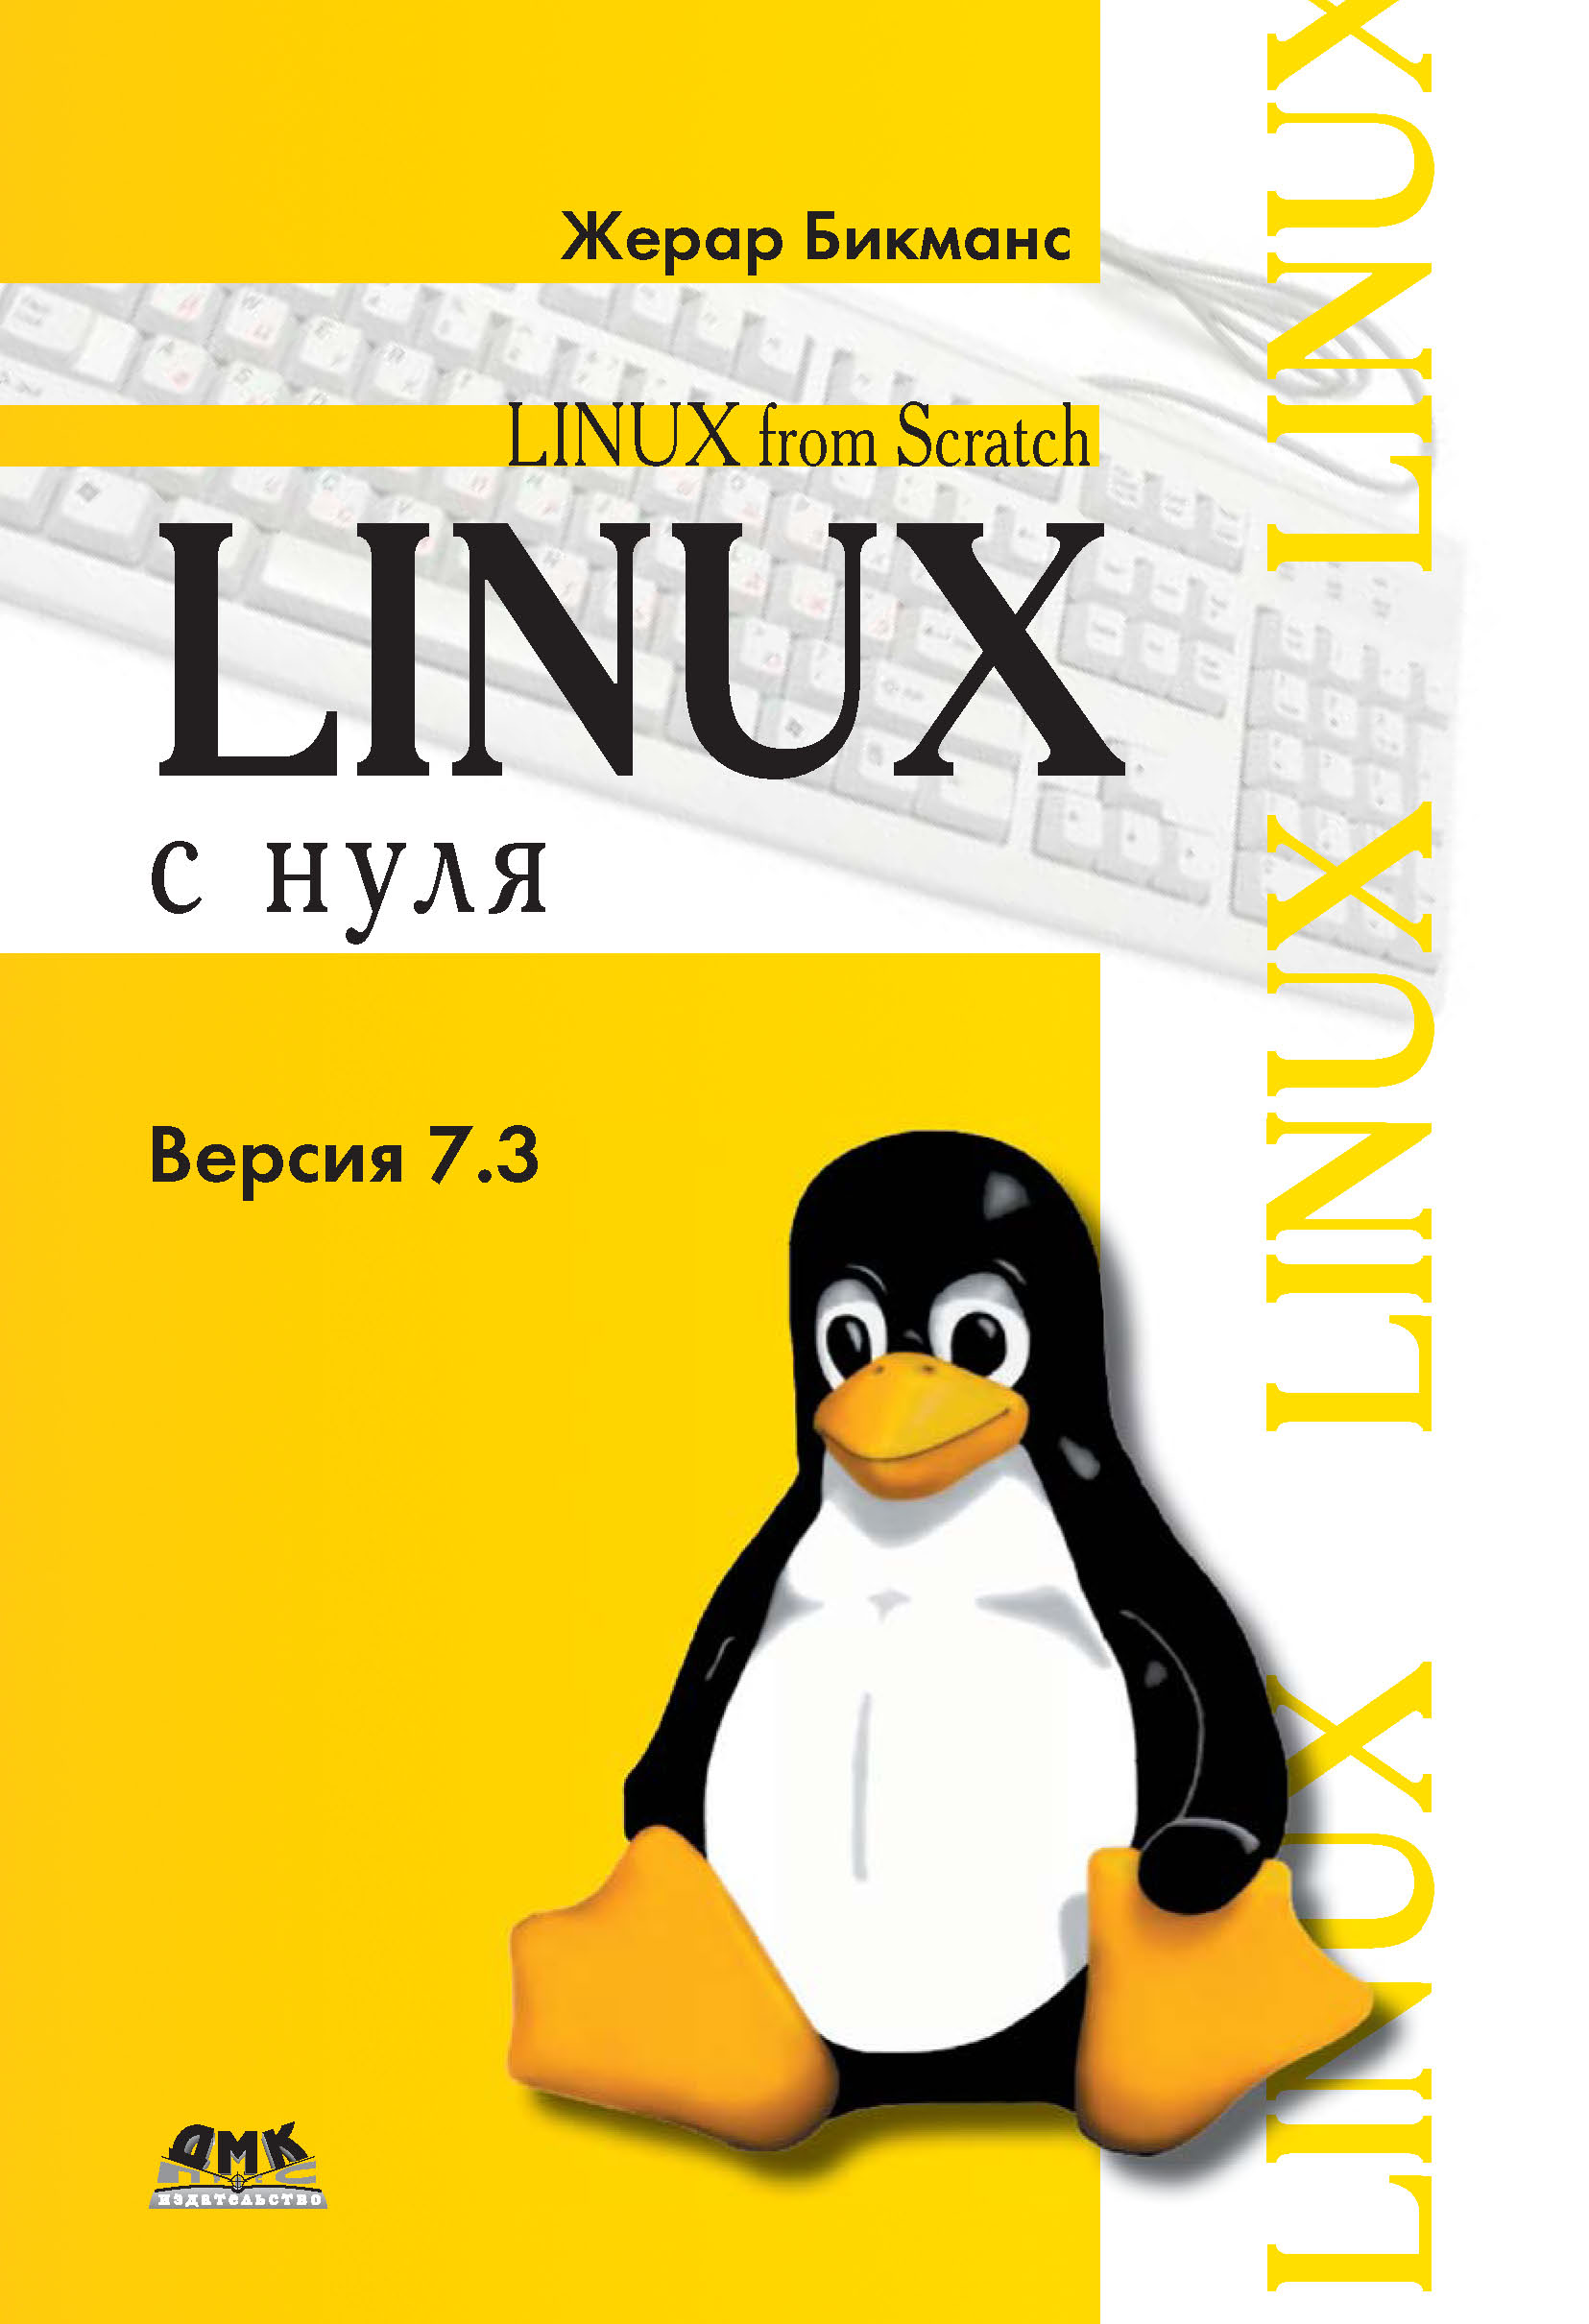 Книга Linux From Scratch Linux с нуля. Версия 7.3 созданная Жерар Бикманс, Н. А. Ромоданов может относится к жанру зарубежная компьютерная литература, ОС и сети. Стоимость электронной книги Linux с нуля. Версия 7.3 с идентификатором 10014044 составляет 359.00 руб.